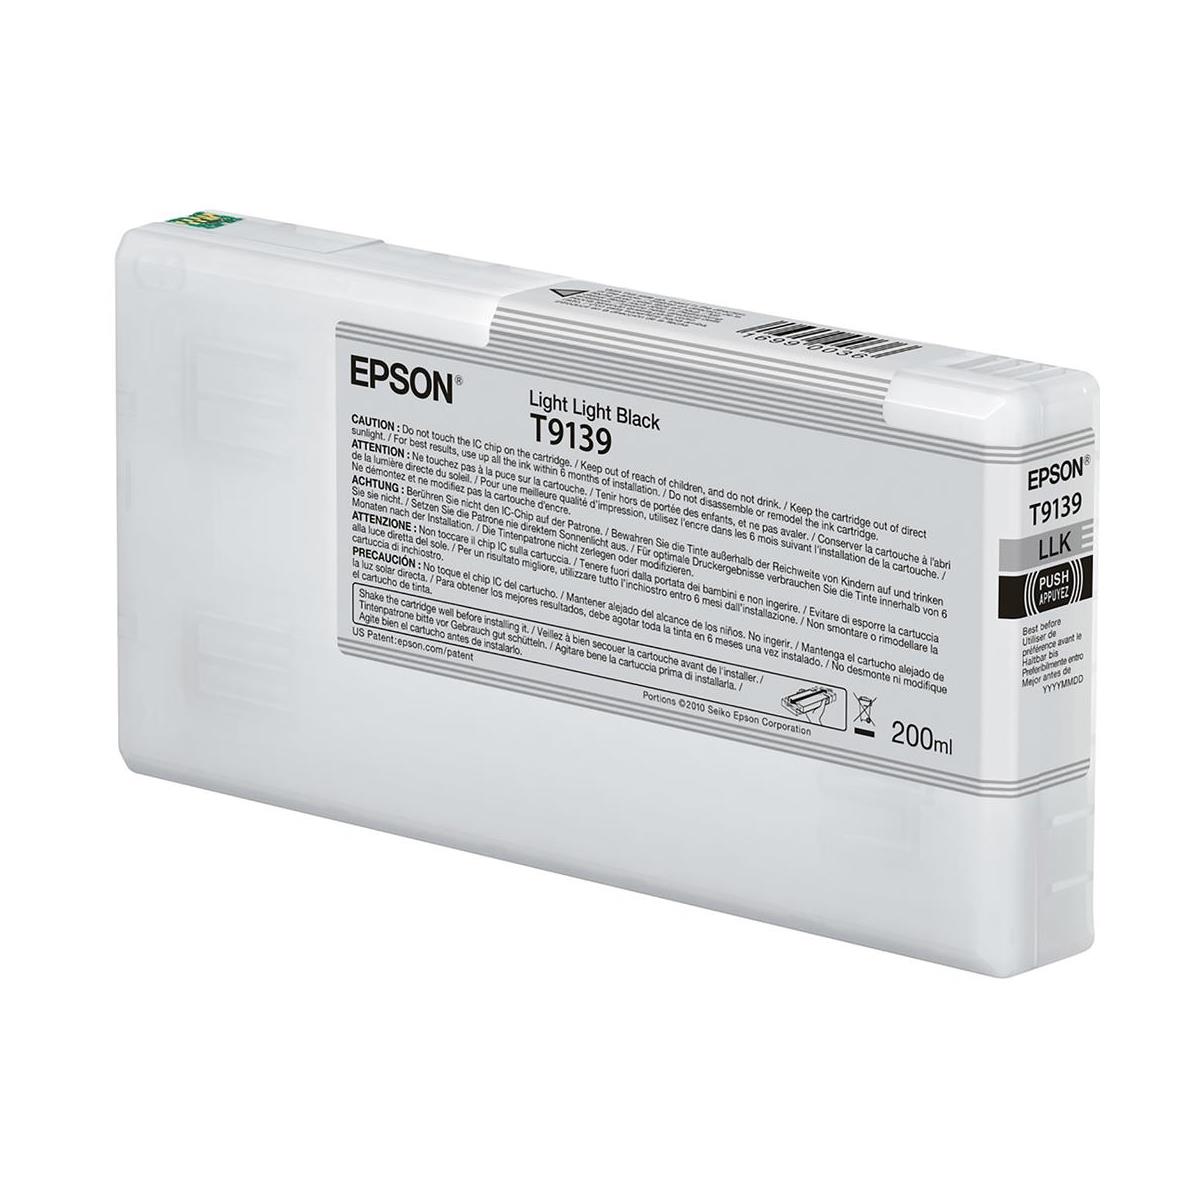 Image of Epson UltraChrome HDX 200ml Light Light Black Ink Cartridge